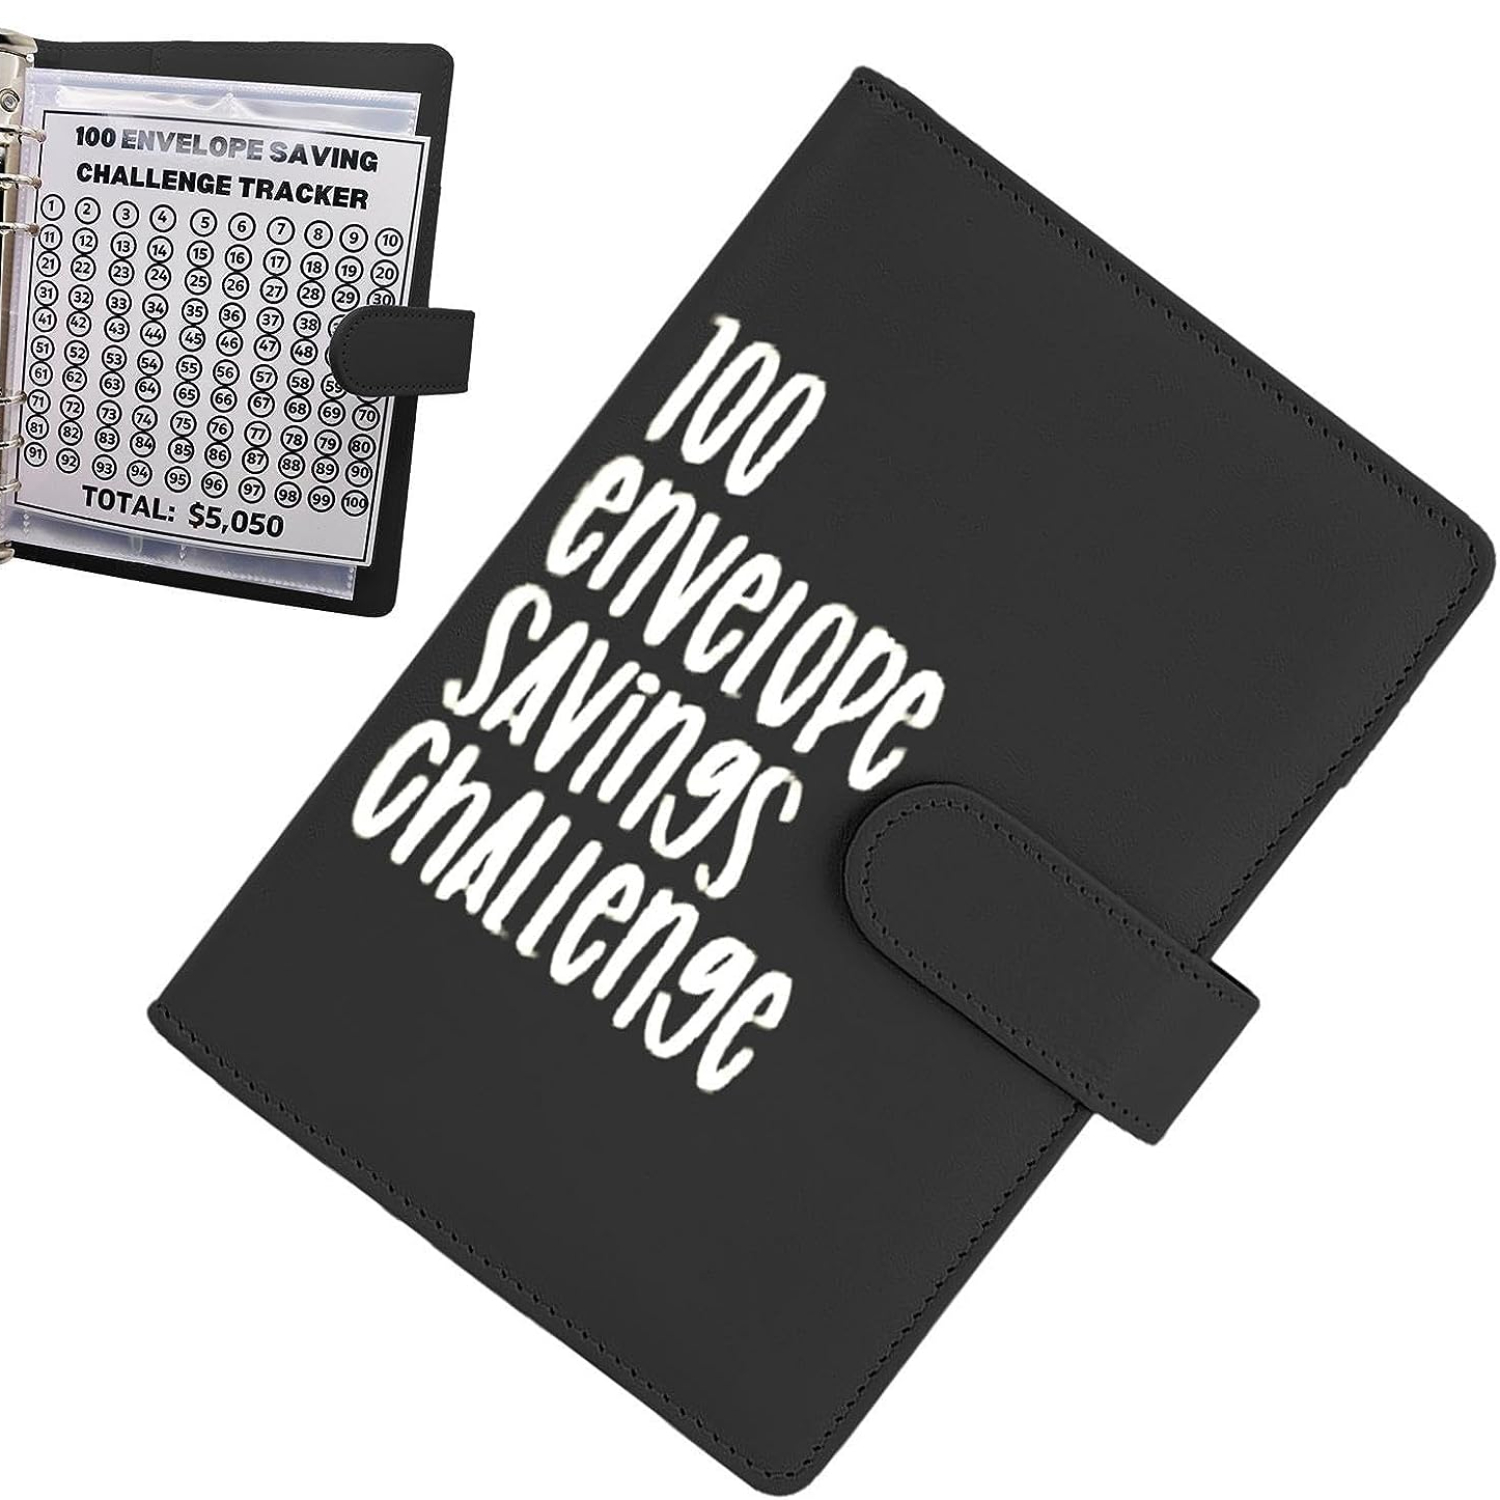  Carpeta de desafío de 100 sobres, libro de ahorros con sobres  de efectivo, manera fácil y divertida de ahorrar $5,050 carpeta de  presupuesto, libro de desafíos de ahorro, carpeta de presupuesto